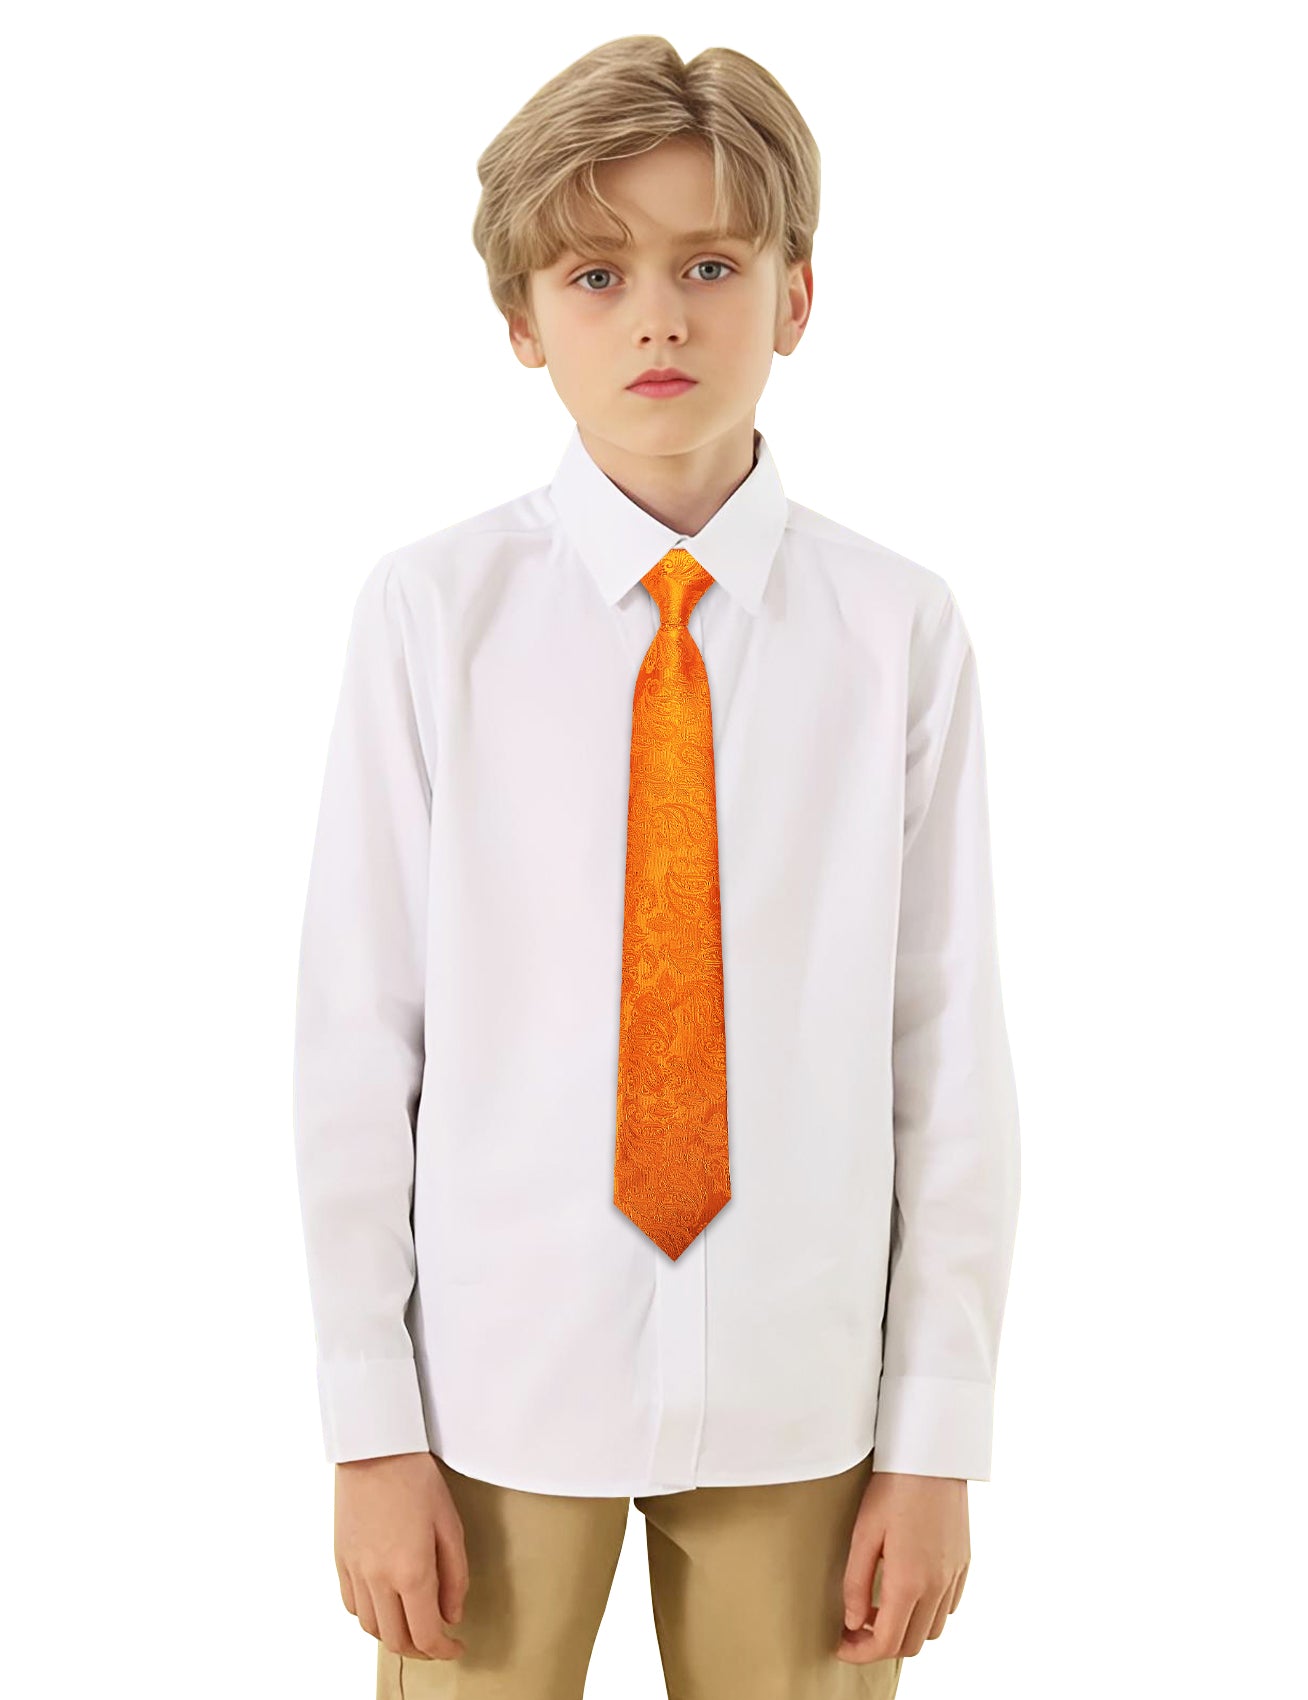 Barry.wang Kids Tie Dark Orange Paisley Children's Silk Tie Hanky Set